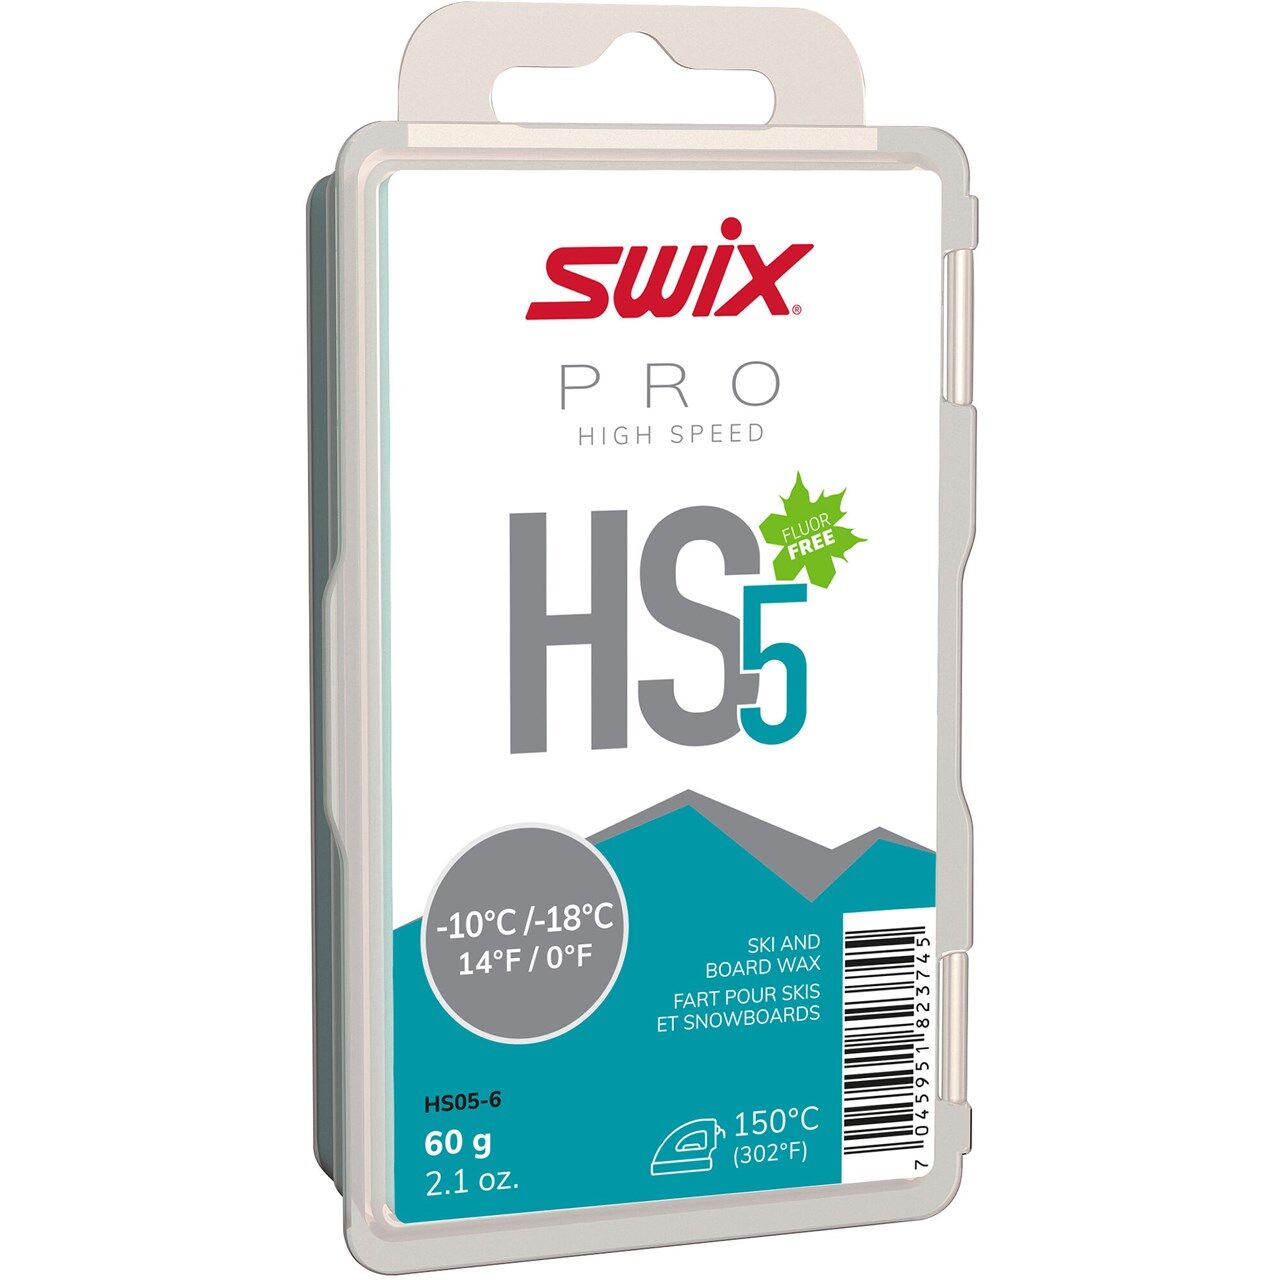 Swix HS5 Turquoise, -10°C/-18°C, 60g HS05-6 2020